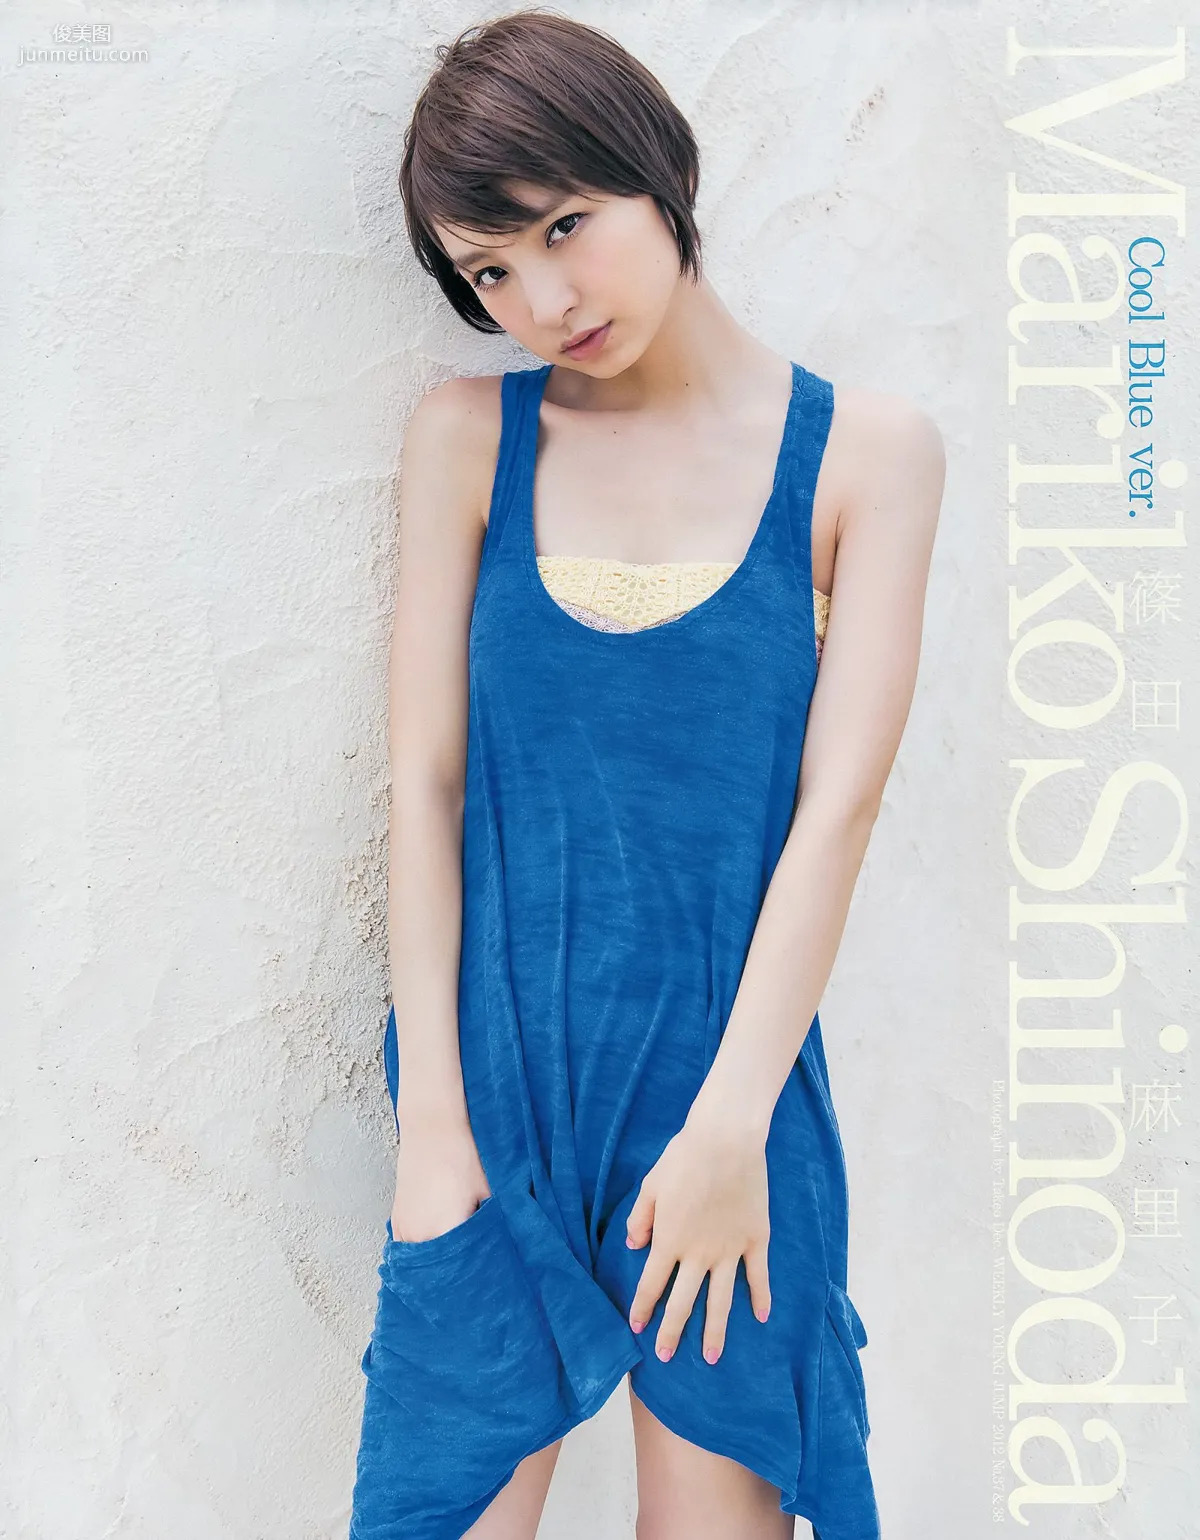 篠田麻里子 伊藤梨沙子 橋本愛 AKB48 [Weekly Young Jump] 2012年No.37-38写真杂志21